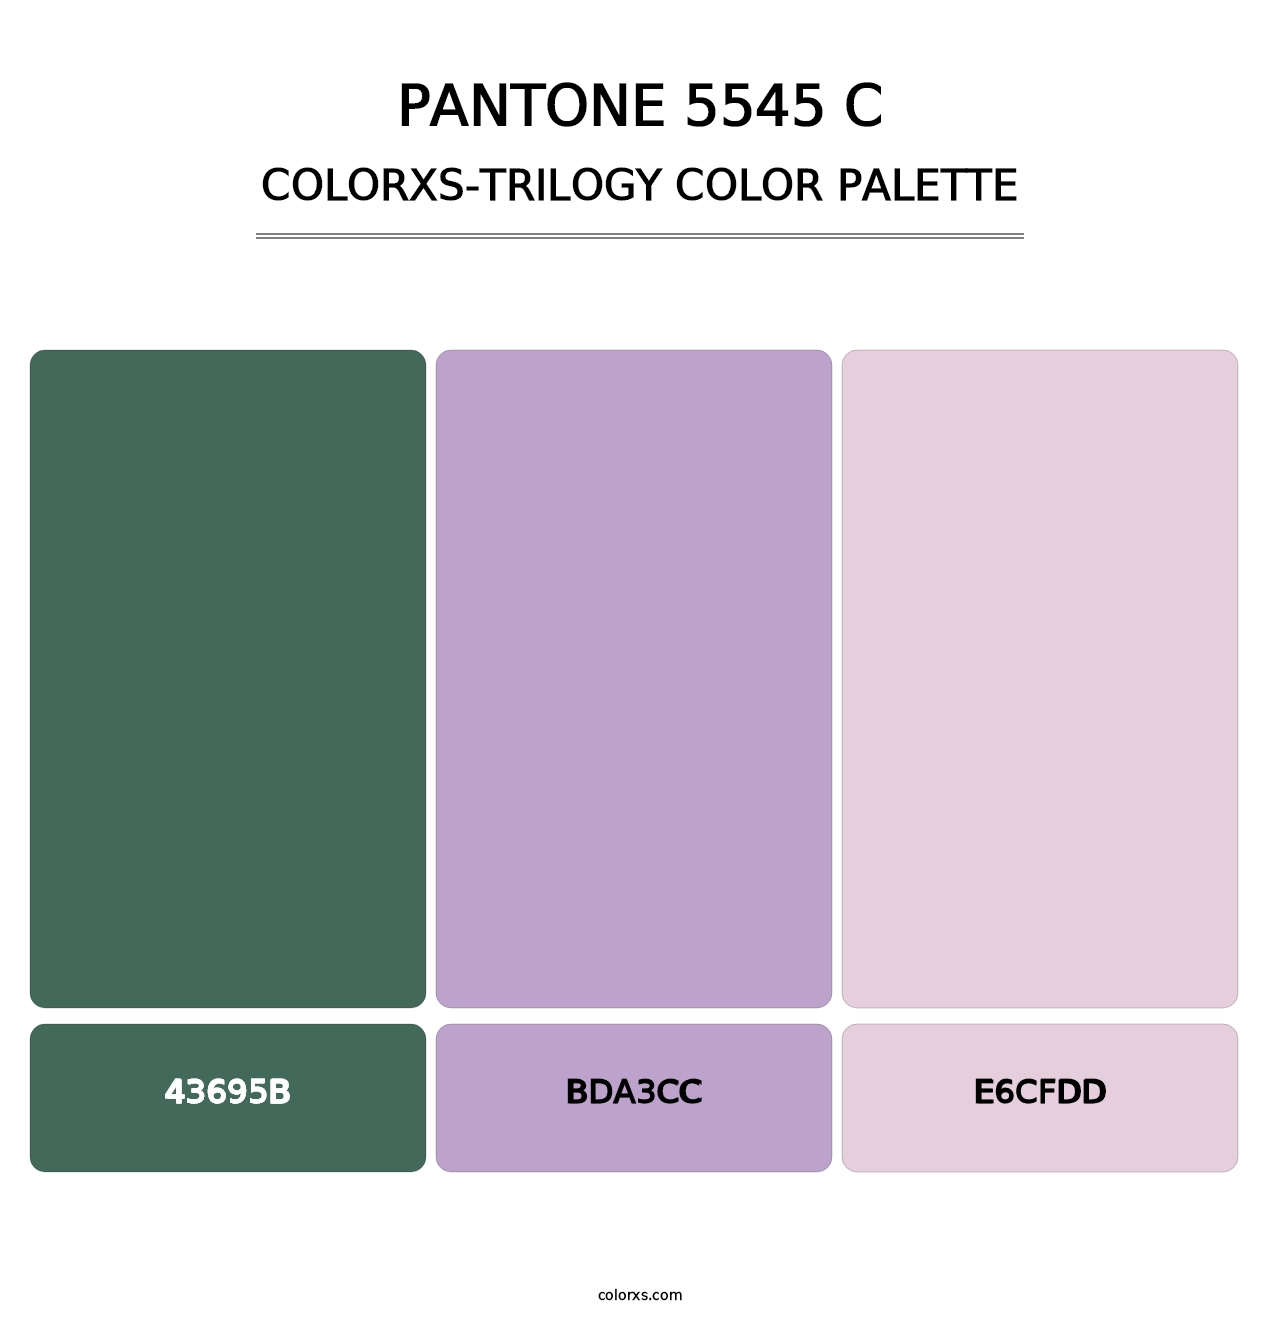 PANTONE 5545 C - Colorxs Trilogy Palette